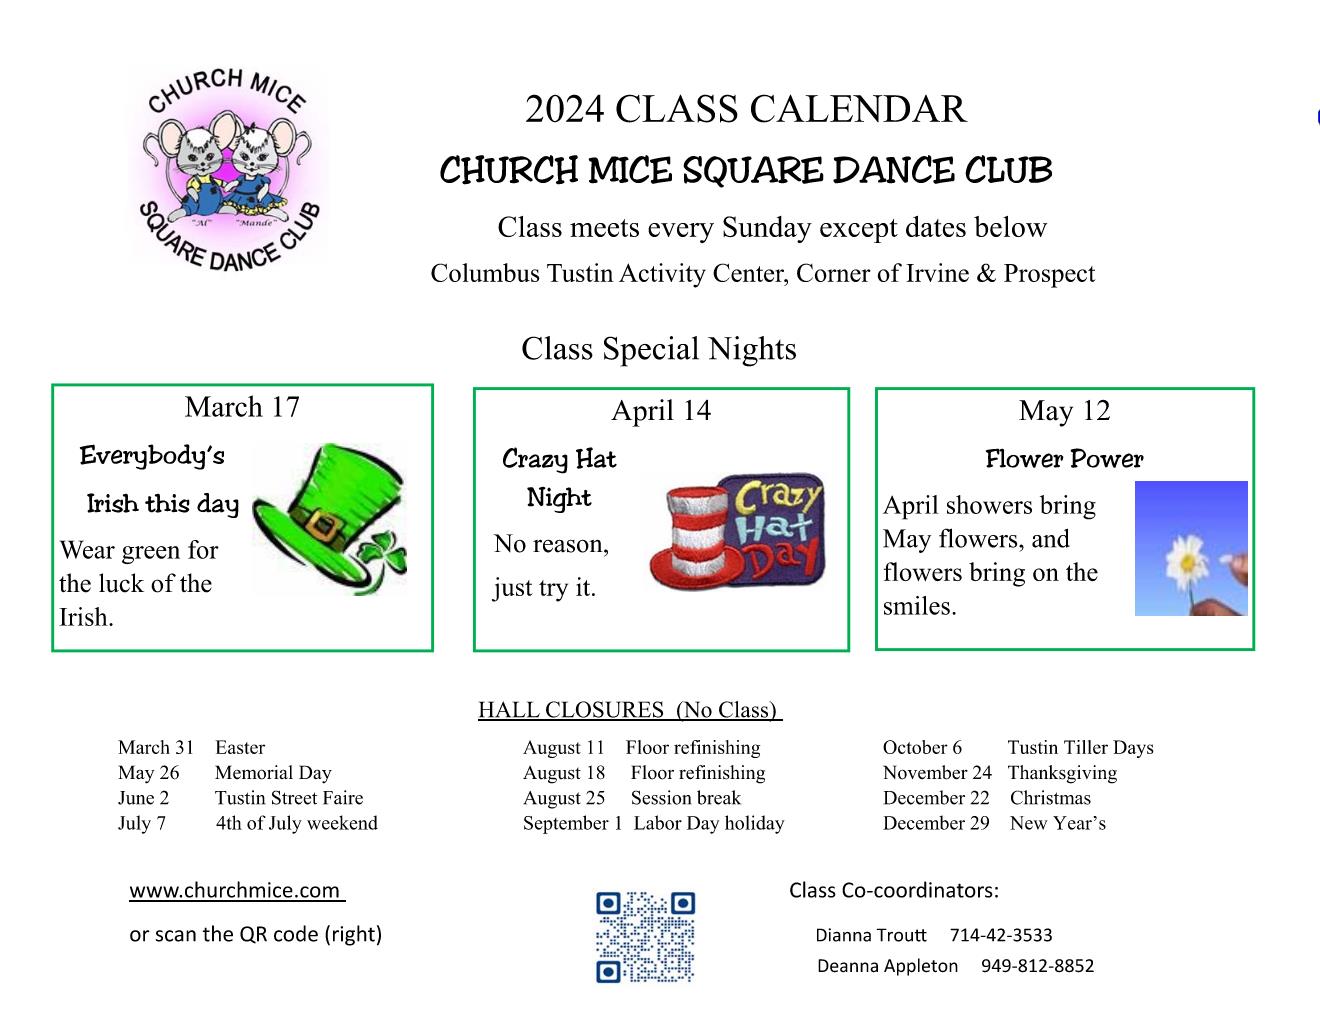 Class special events calendar Mar-May24